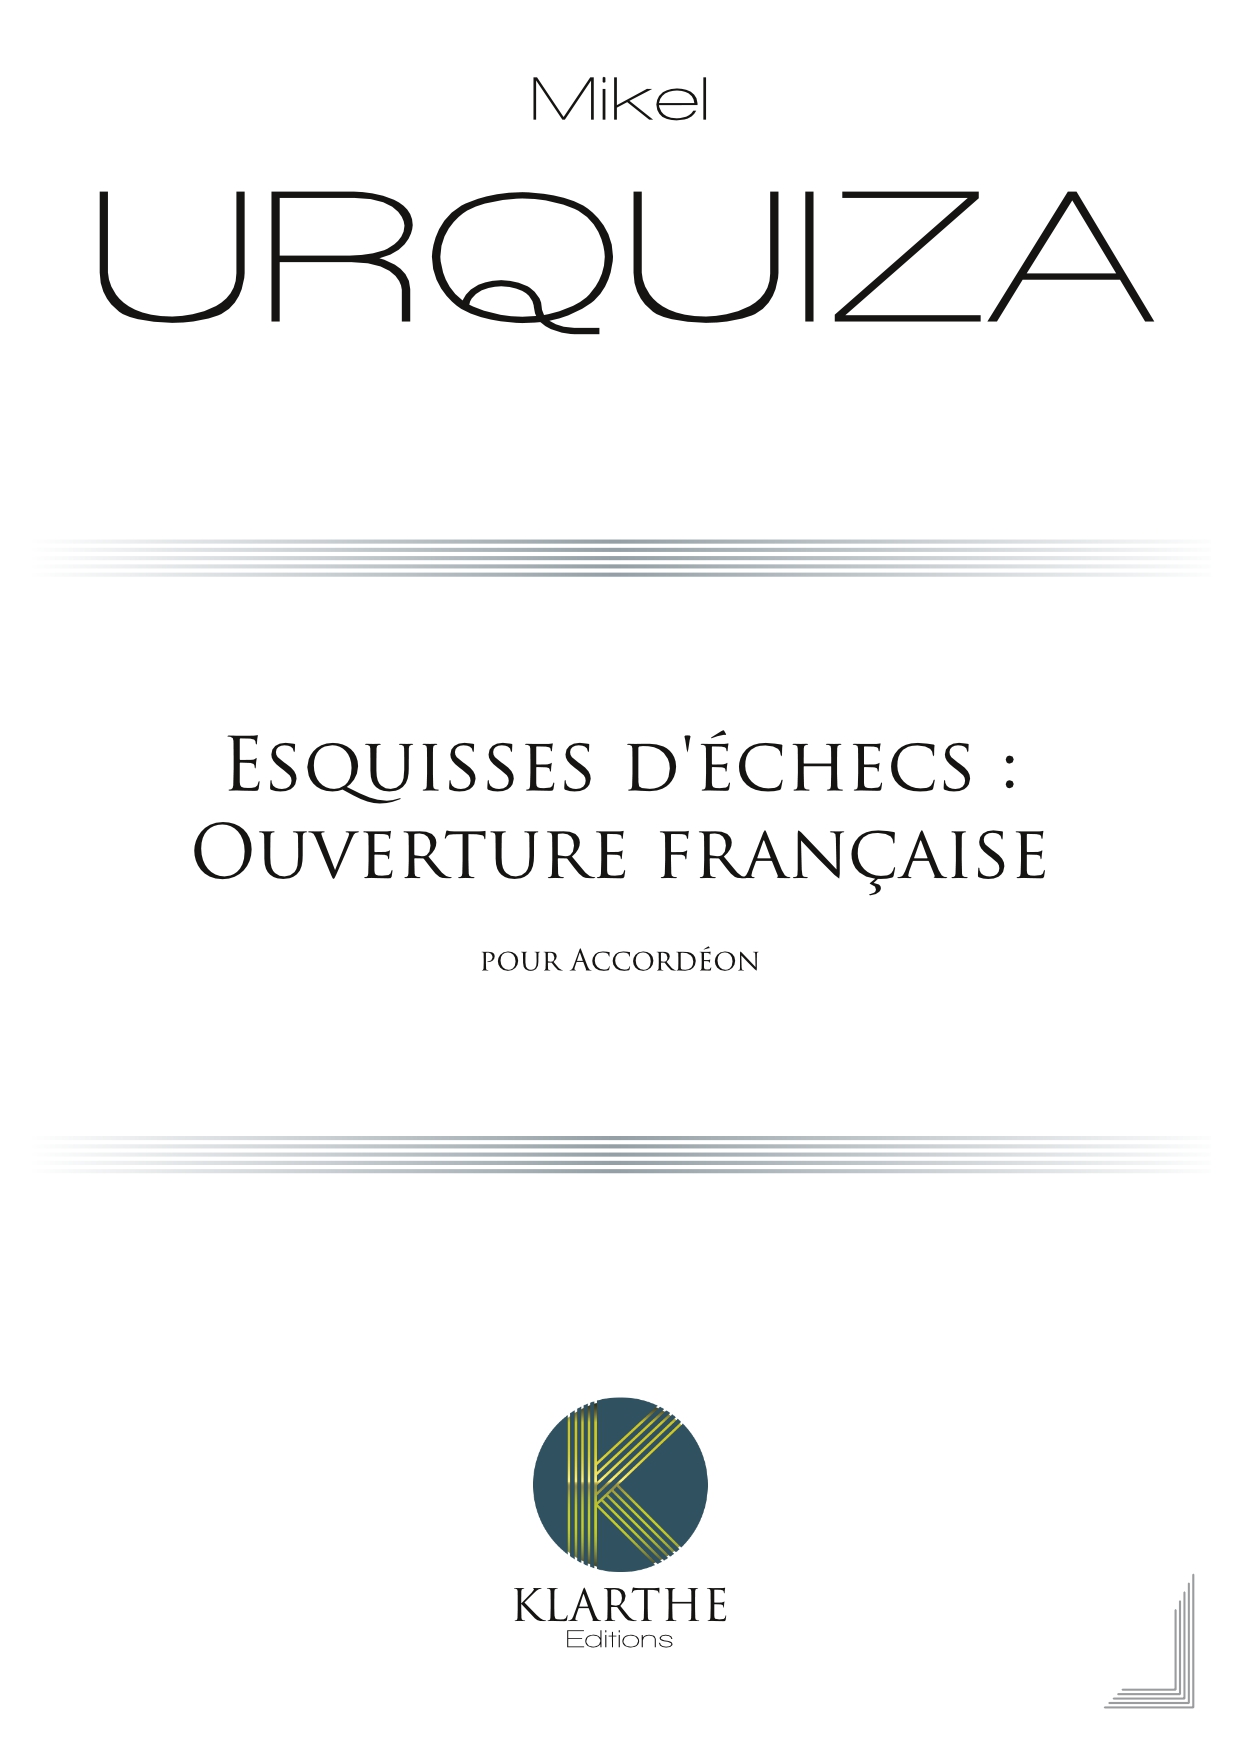 Esquisses d?checs : Ouverture franaise (URQUIZA MIKEL)